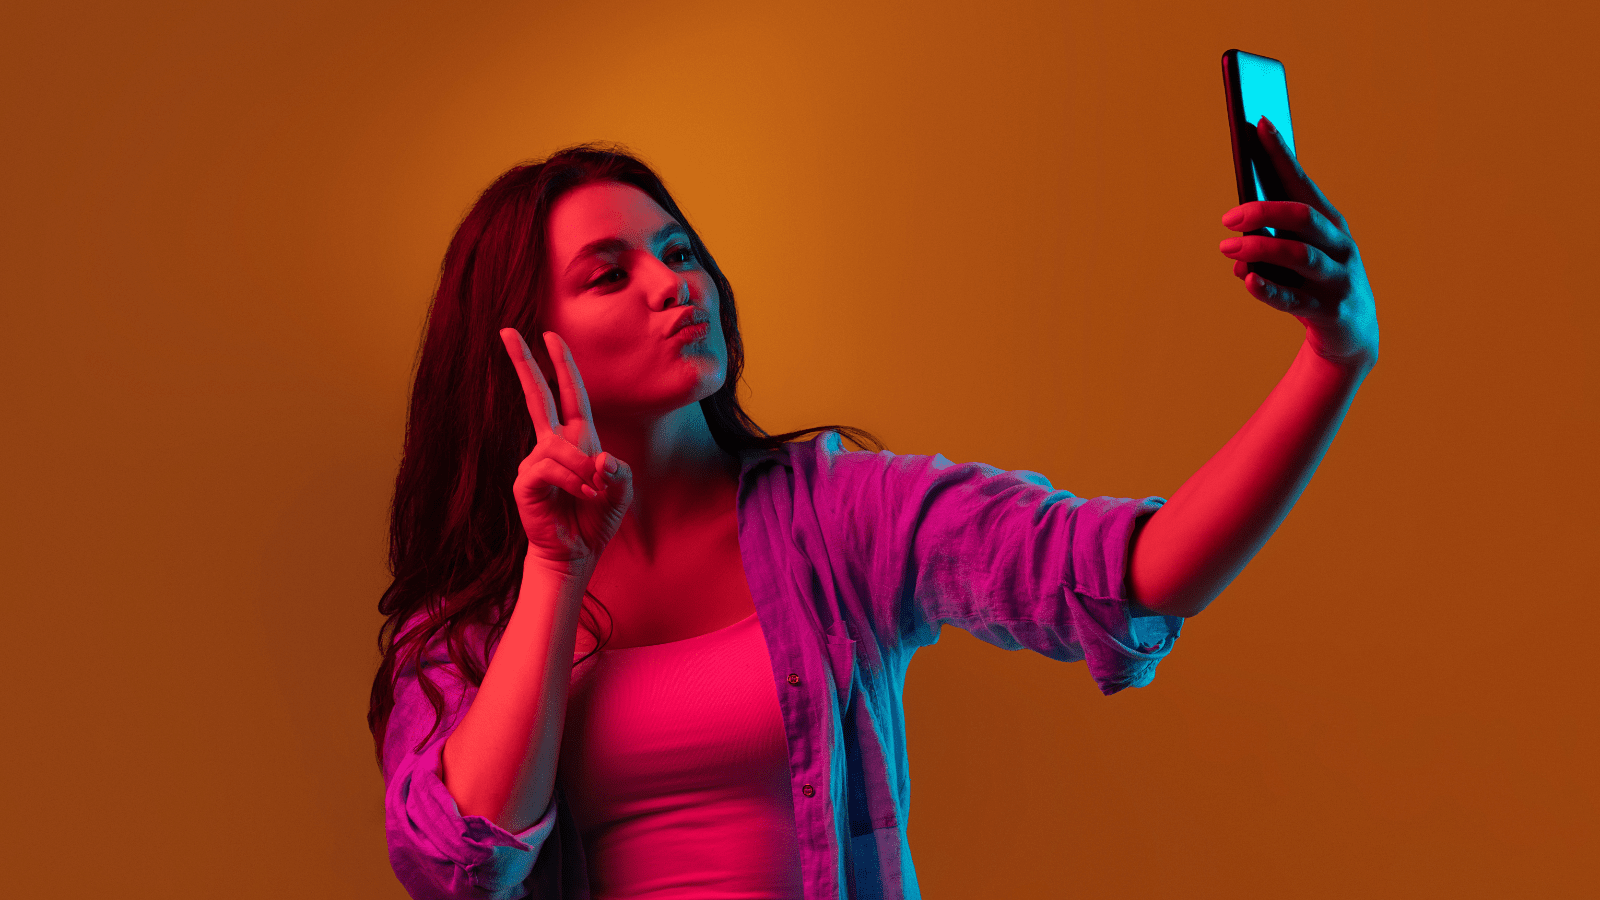 Saiba como fazer suas selfies com a ia (inteligência artificial) de maneira pratica.